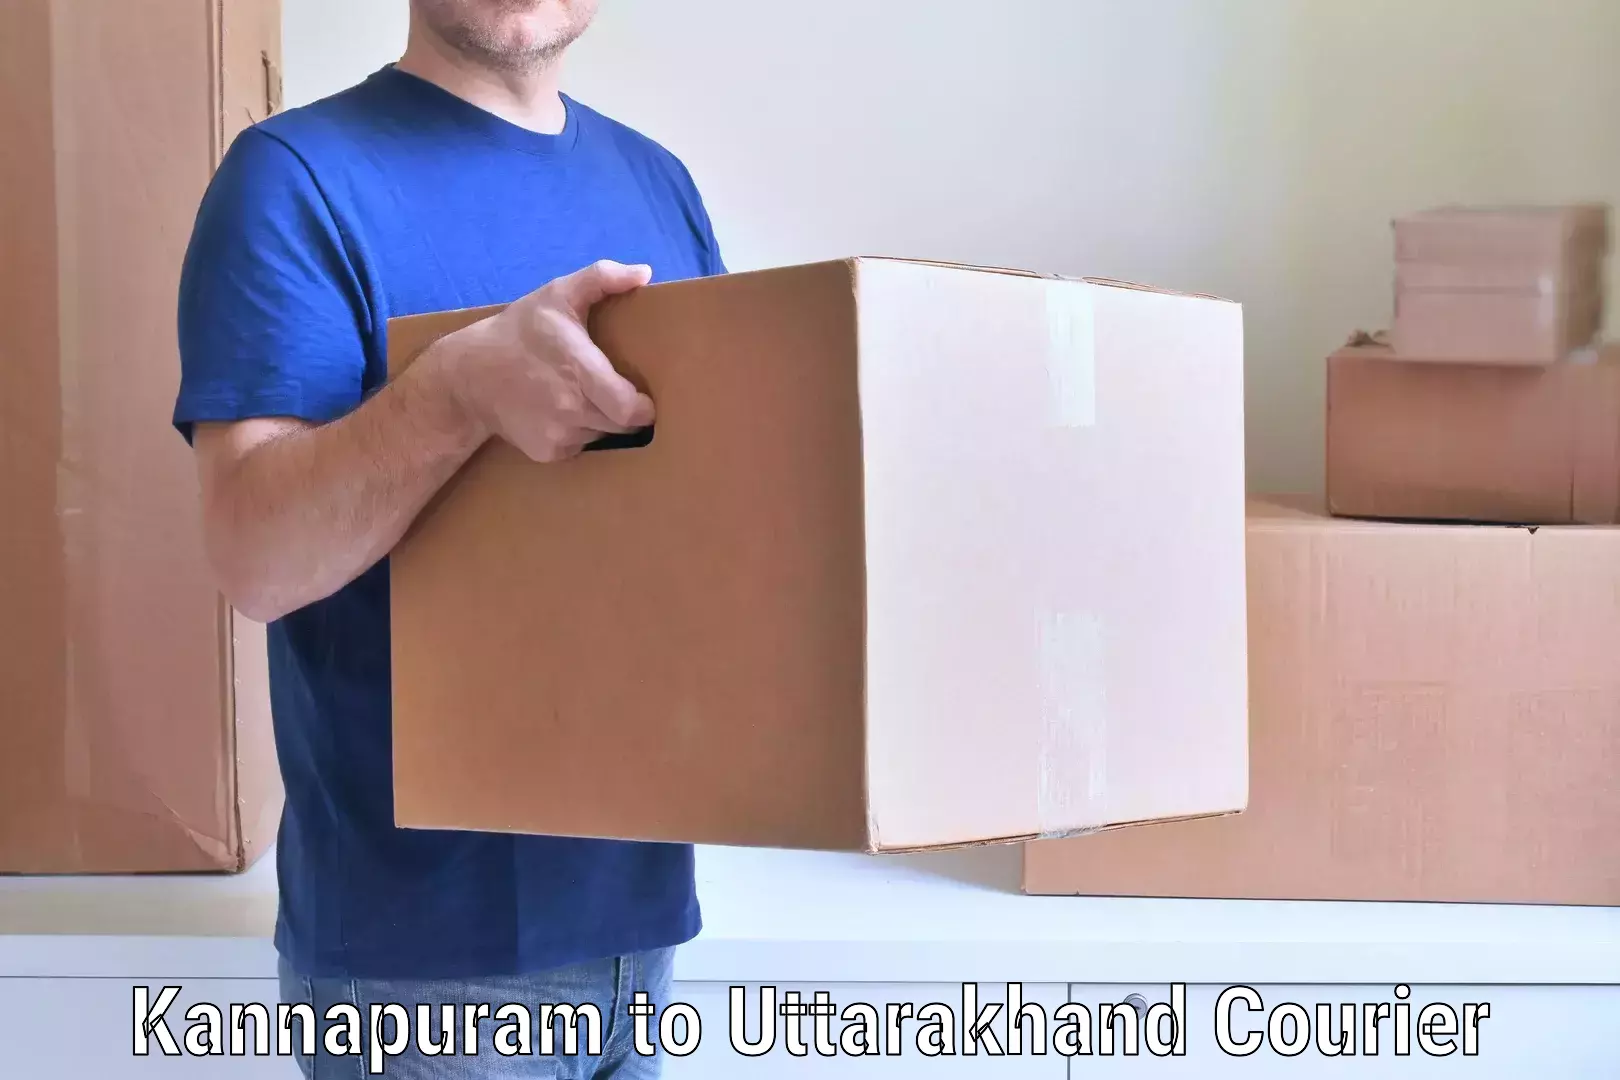 Seamless moving process Kannapuram to Bageshwar